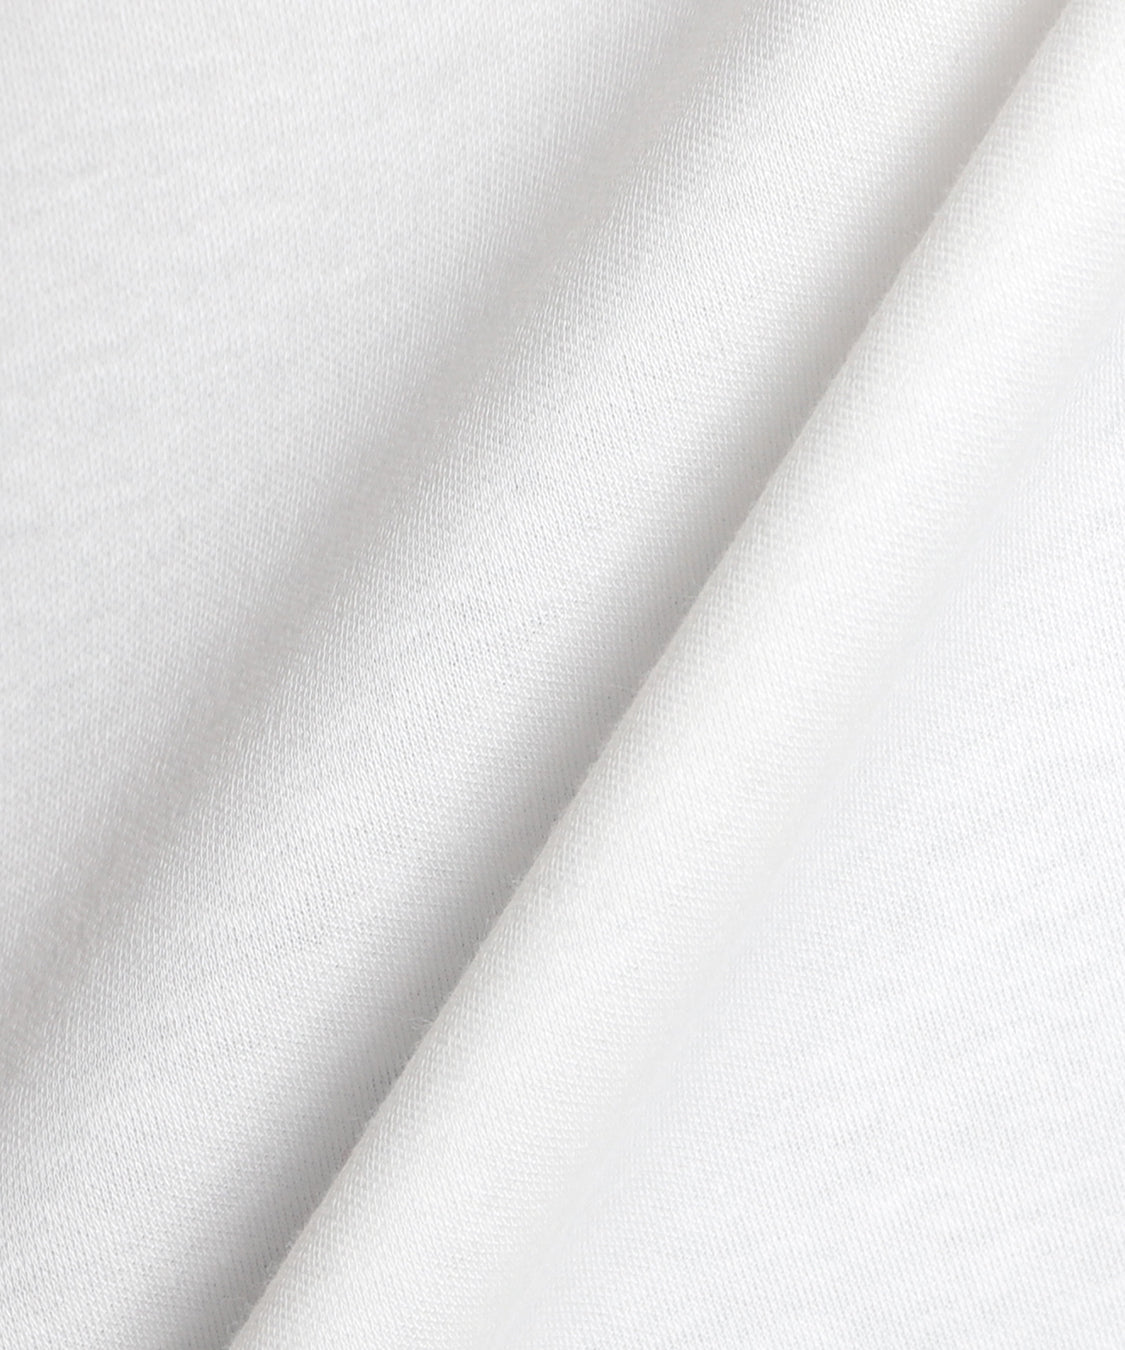 CANOA(カノア) 綿スムースコスメポーチ刺繍プルオーバー